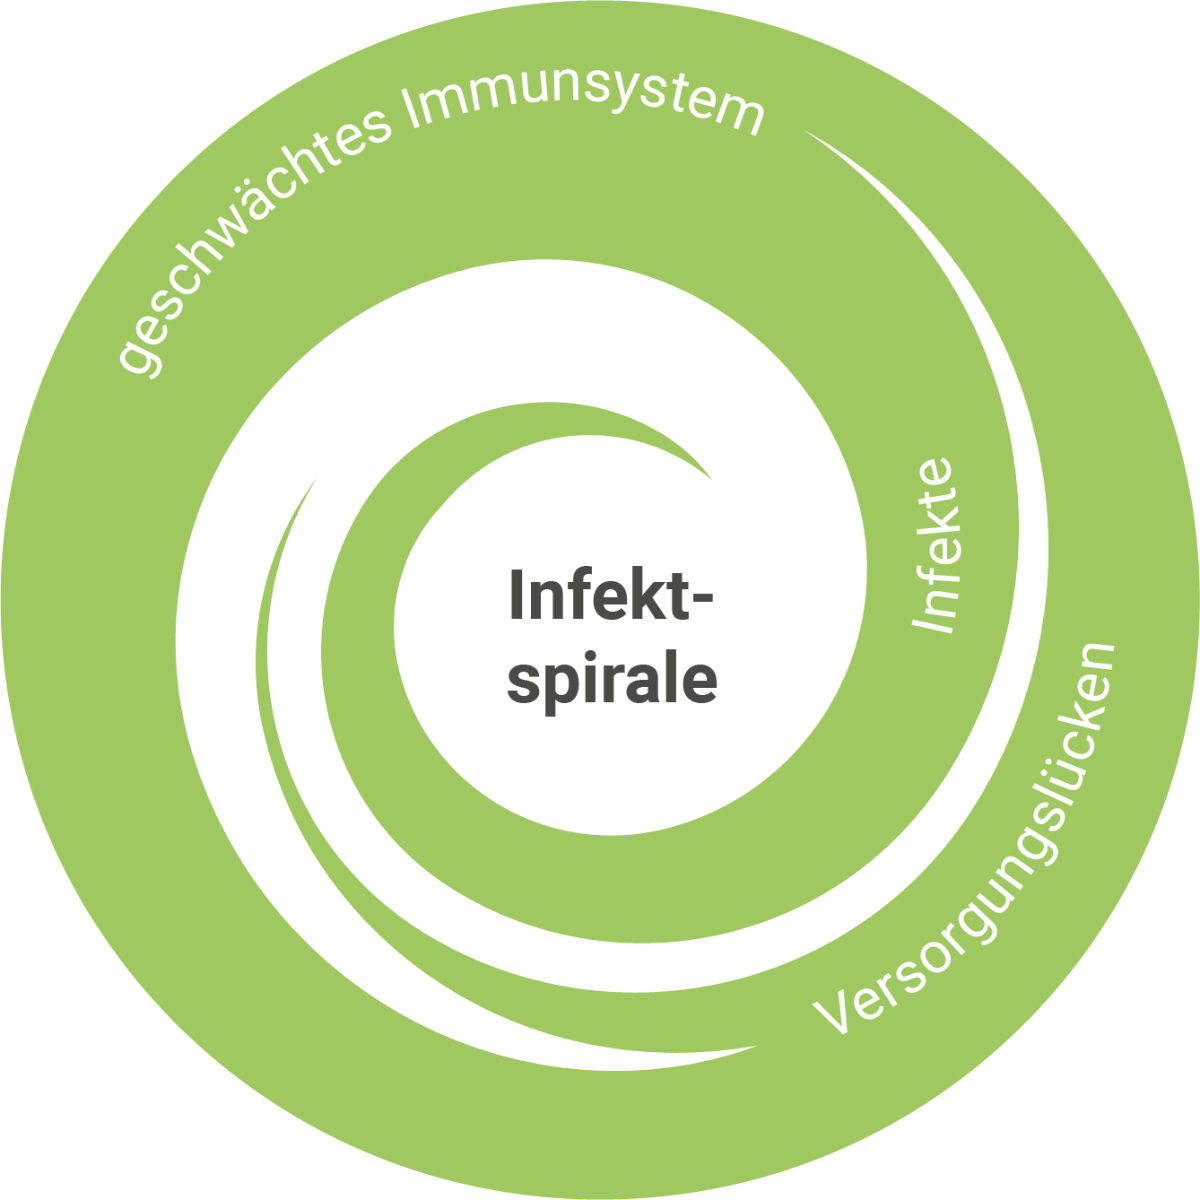 infektspirale-schwaches-immunsystem-ueberblick